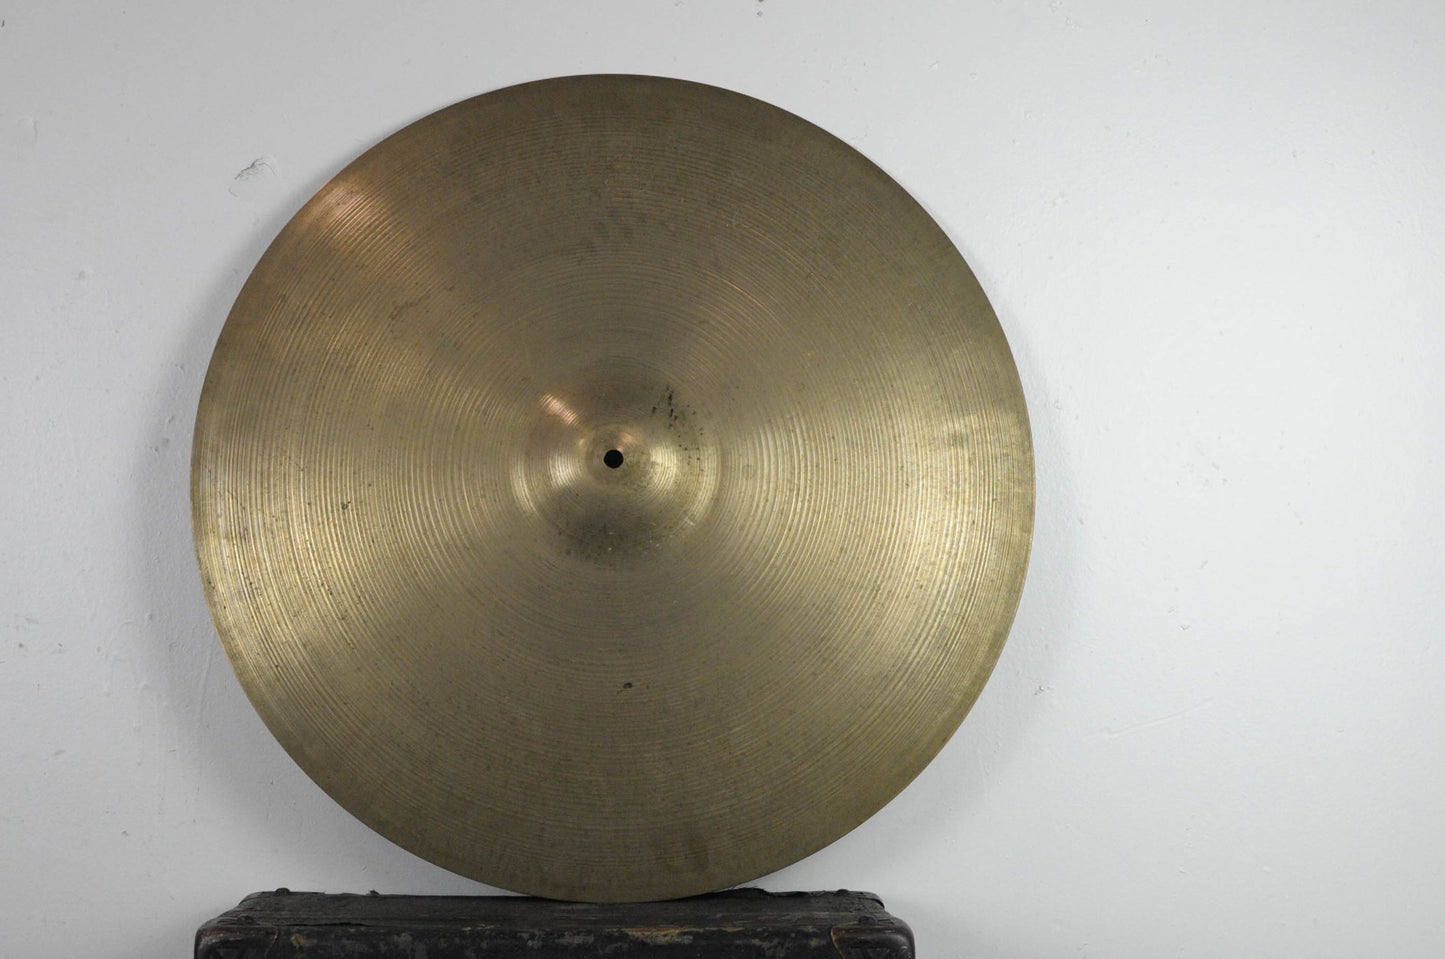 1960s Zildjian A 24" Ride Cymbal 3740g